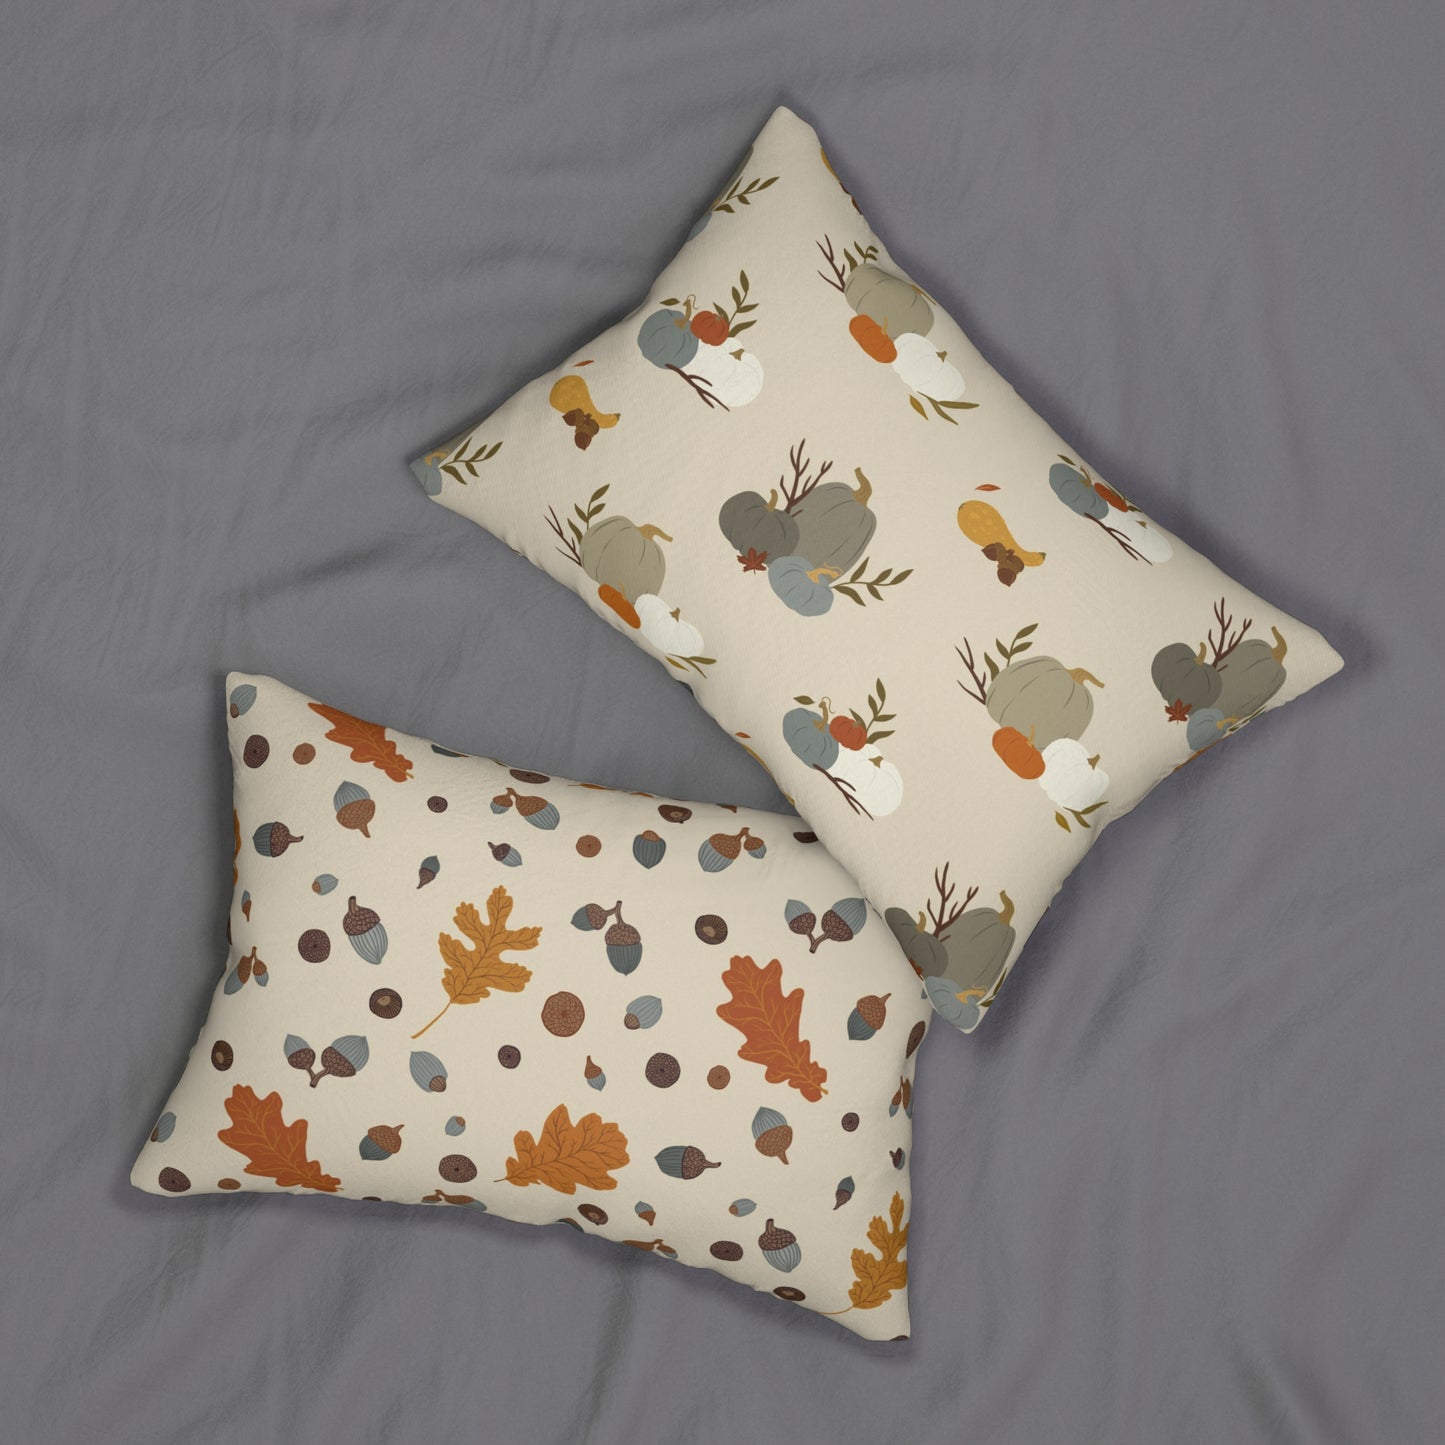 Autumn Acorns and Pumpkins Throw Pillow - Reversible